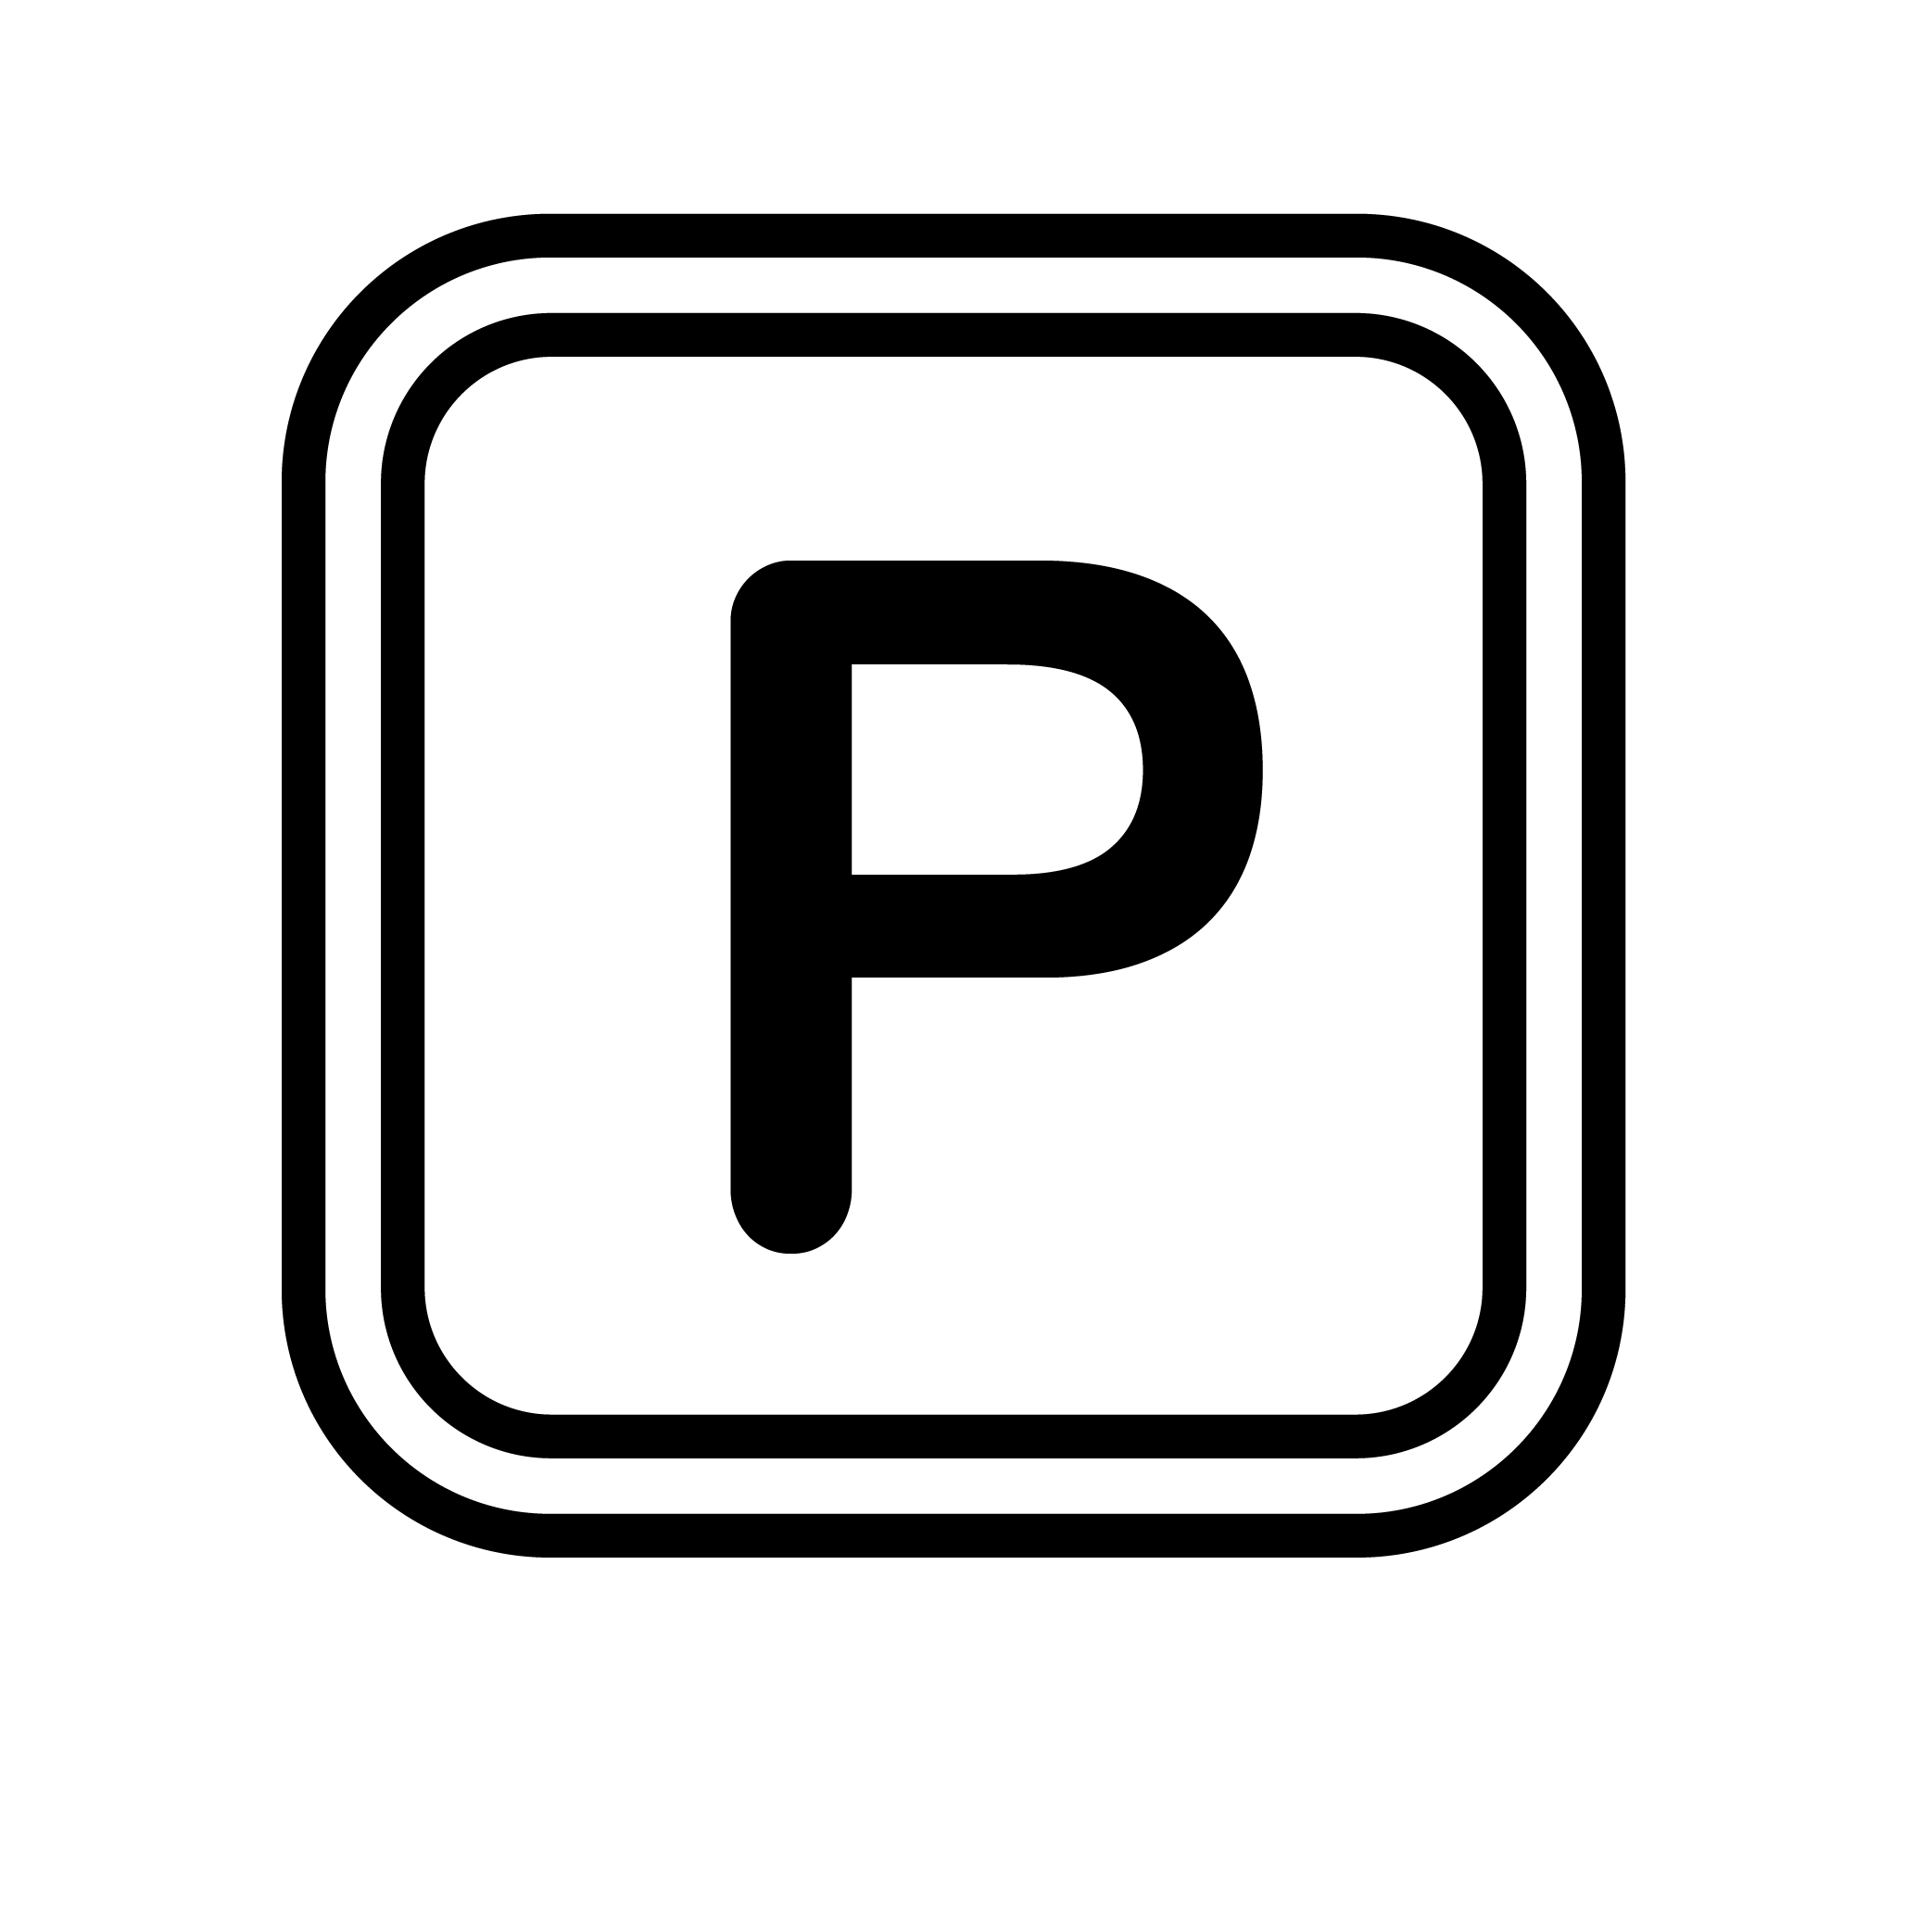 g.Parking